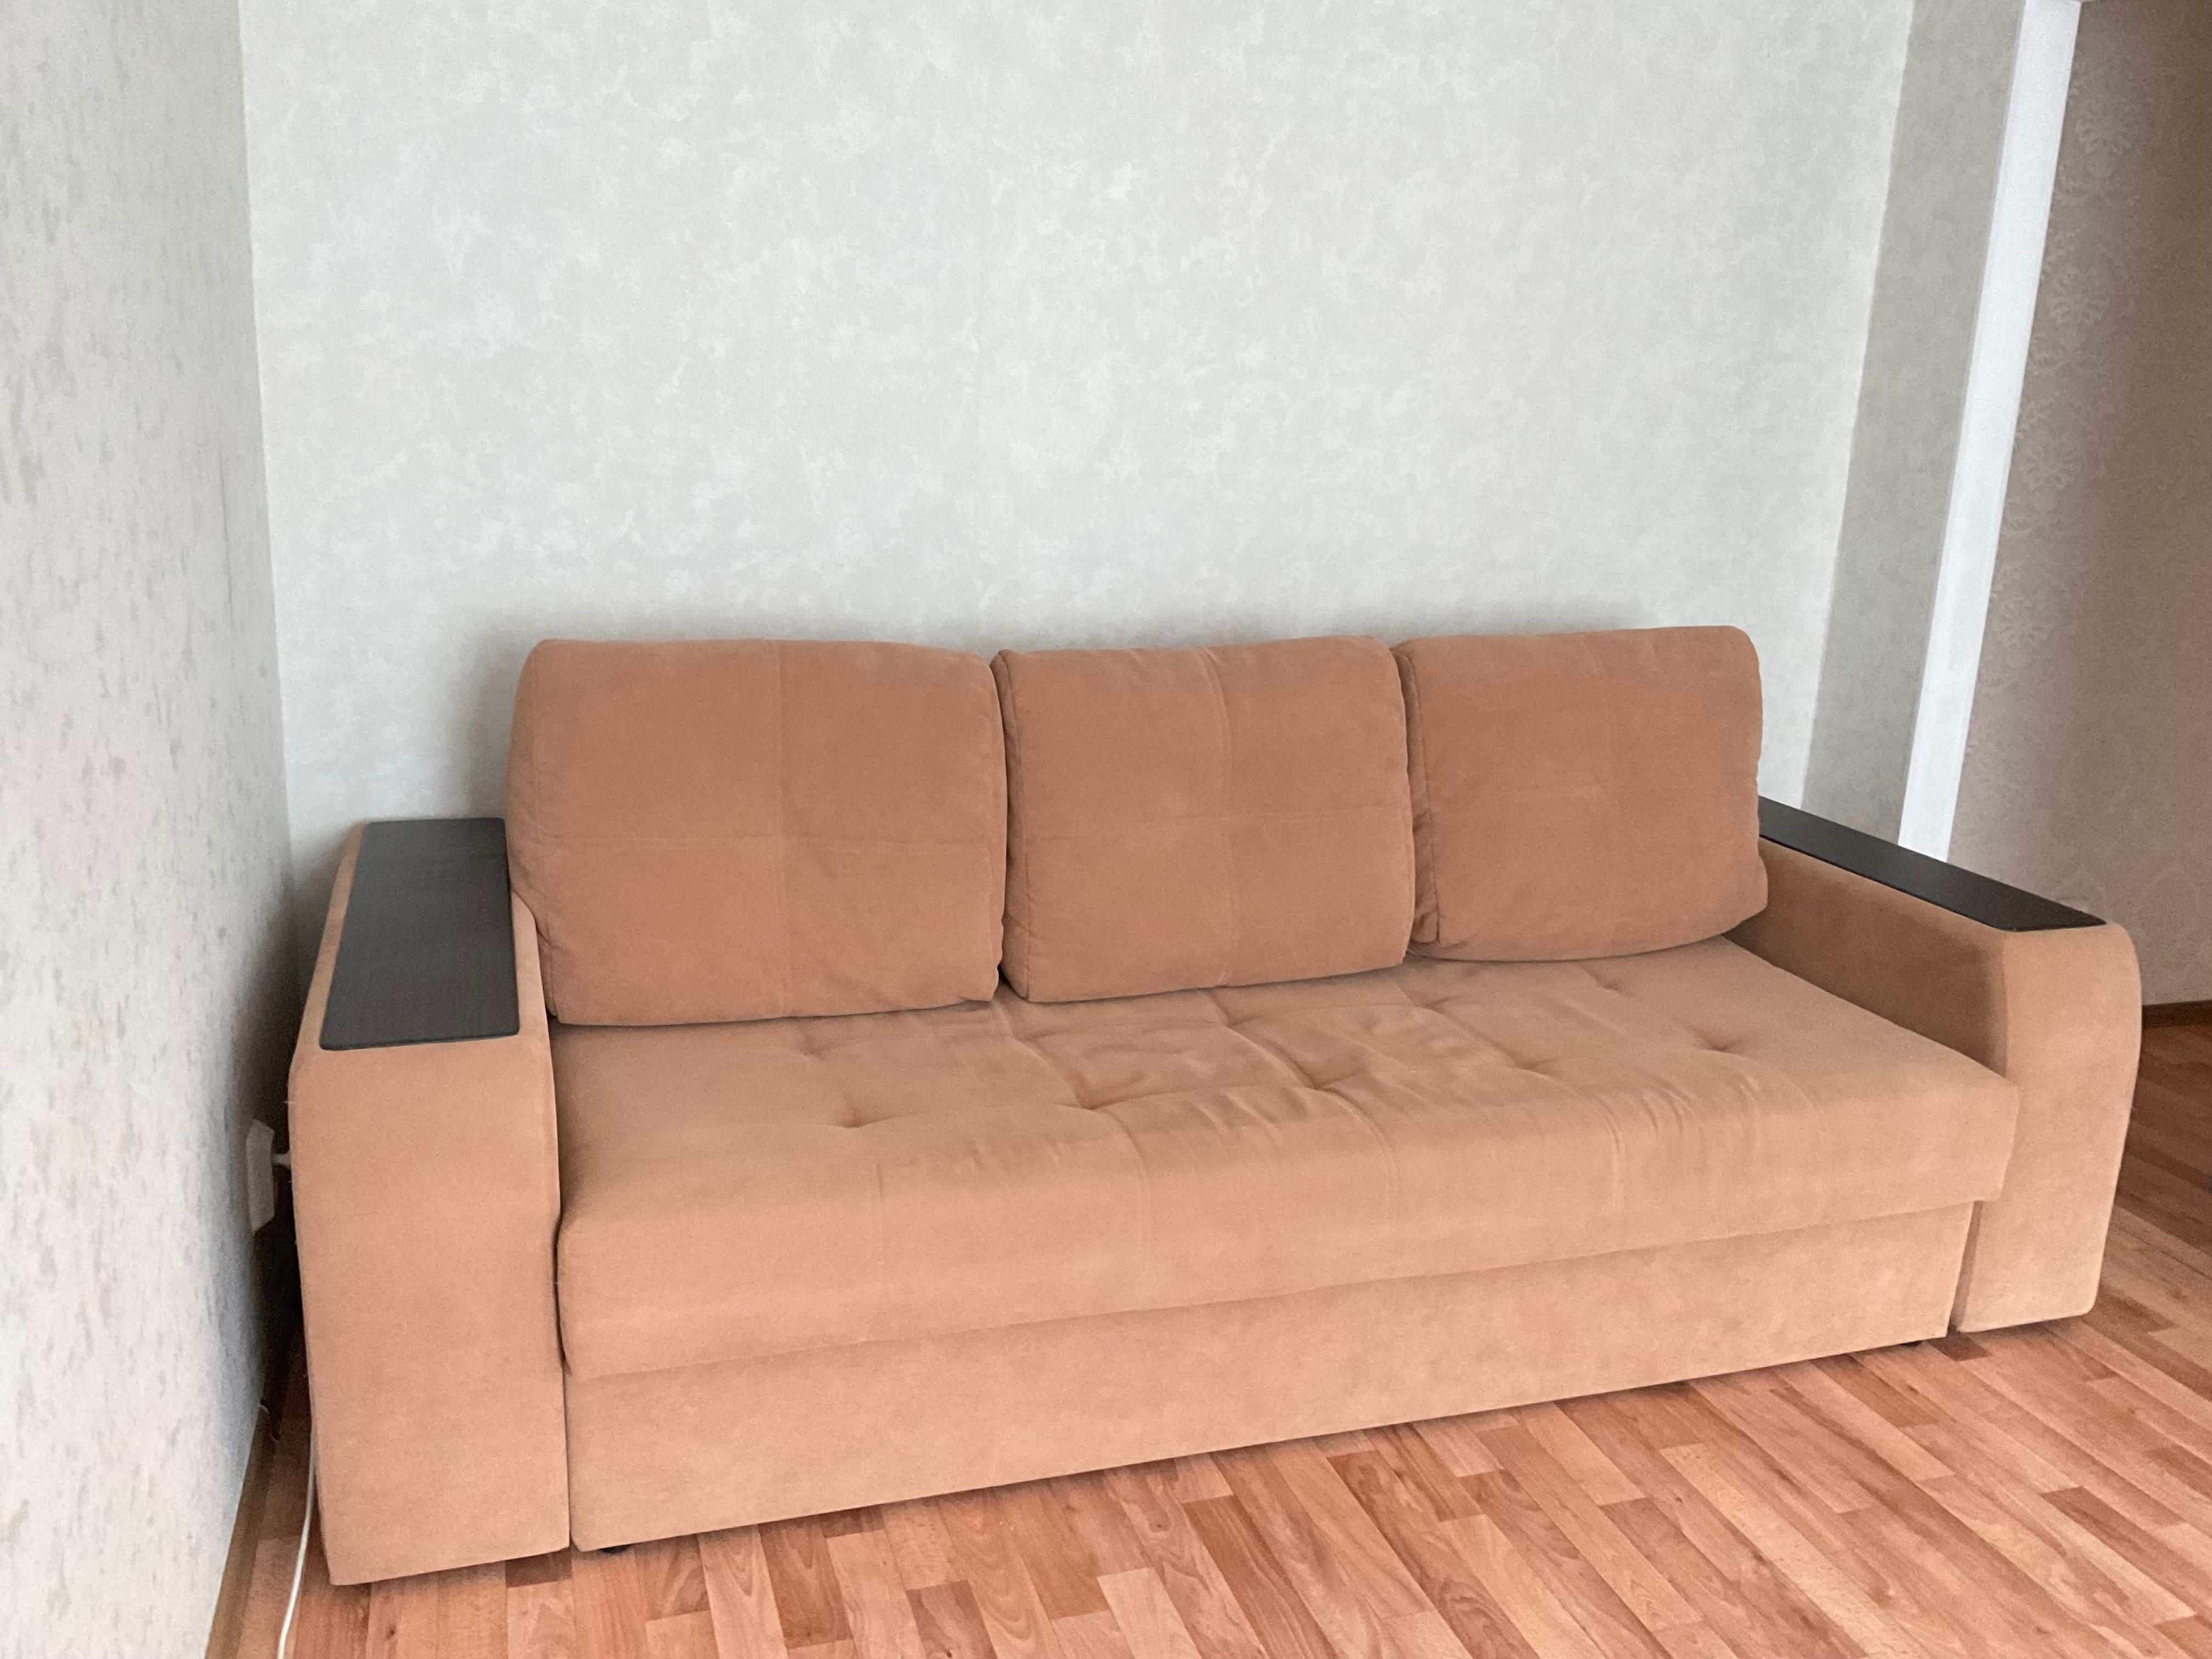 Продам диван, в отличном состоянии